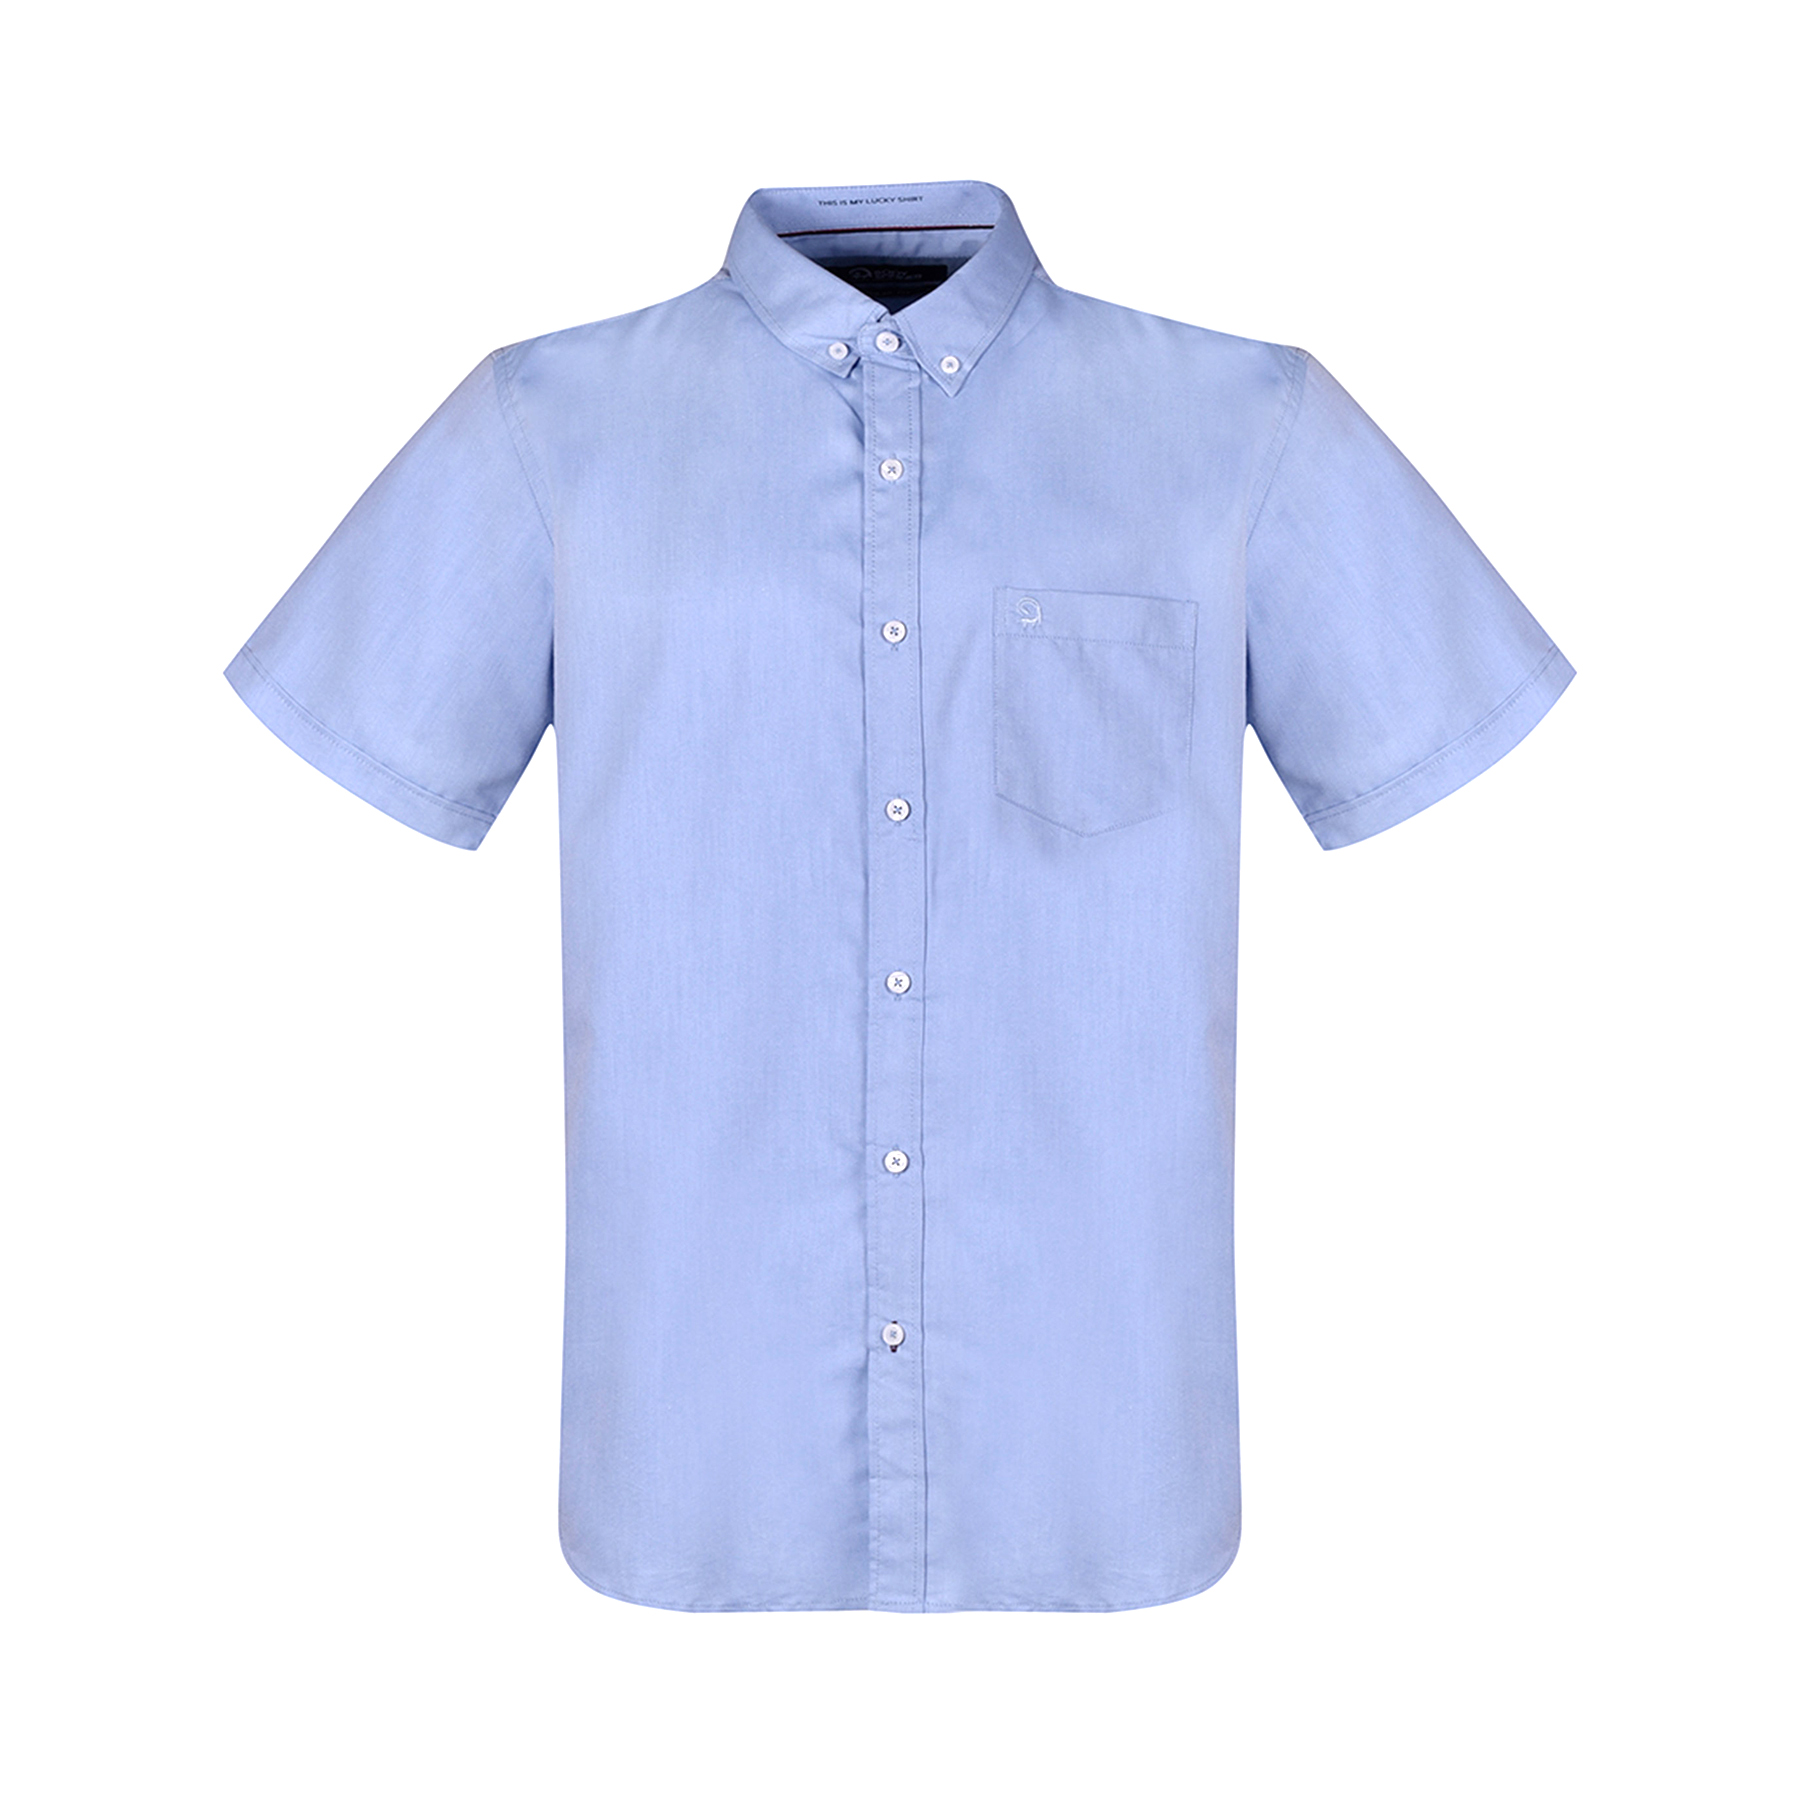 پیراهن آستین کوتاه مردانه بادی اسپینر مدل 1106 کد 2 رنگ آبی